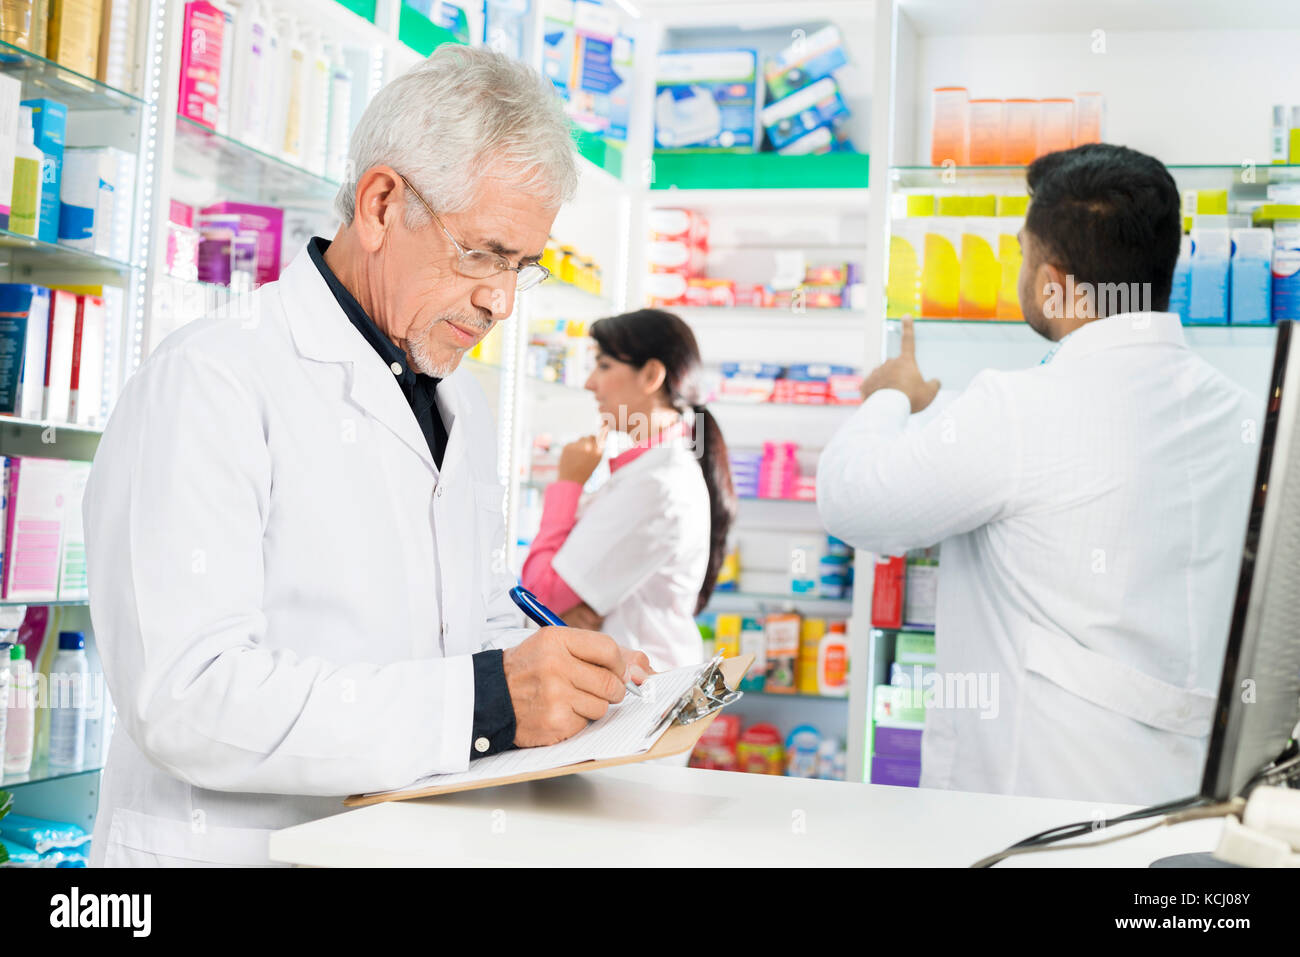 Farmacia escrito el portapapeles mientras sus compañeros trabajan en la farmacia Foto de stock